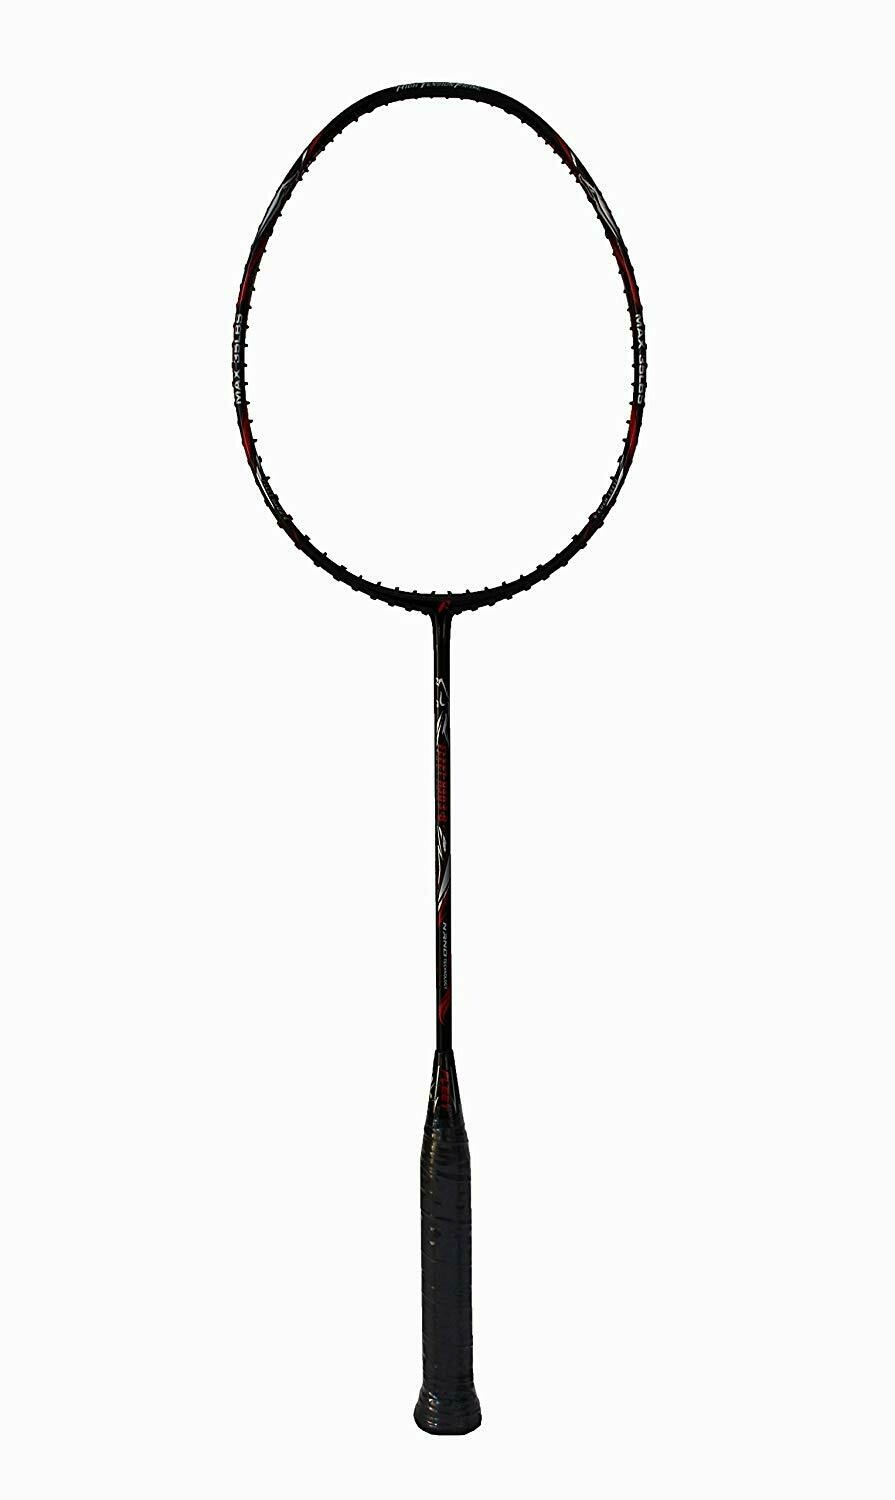 Fleet H303-8 Professional Badminton Racquet - Unstrung (Maximum 35 Lbs Frame)